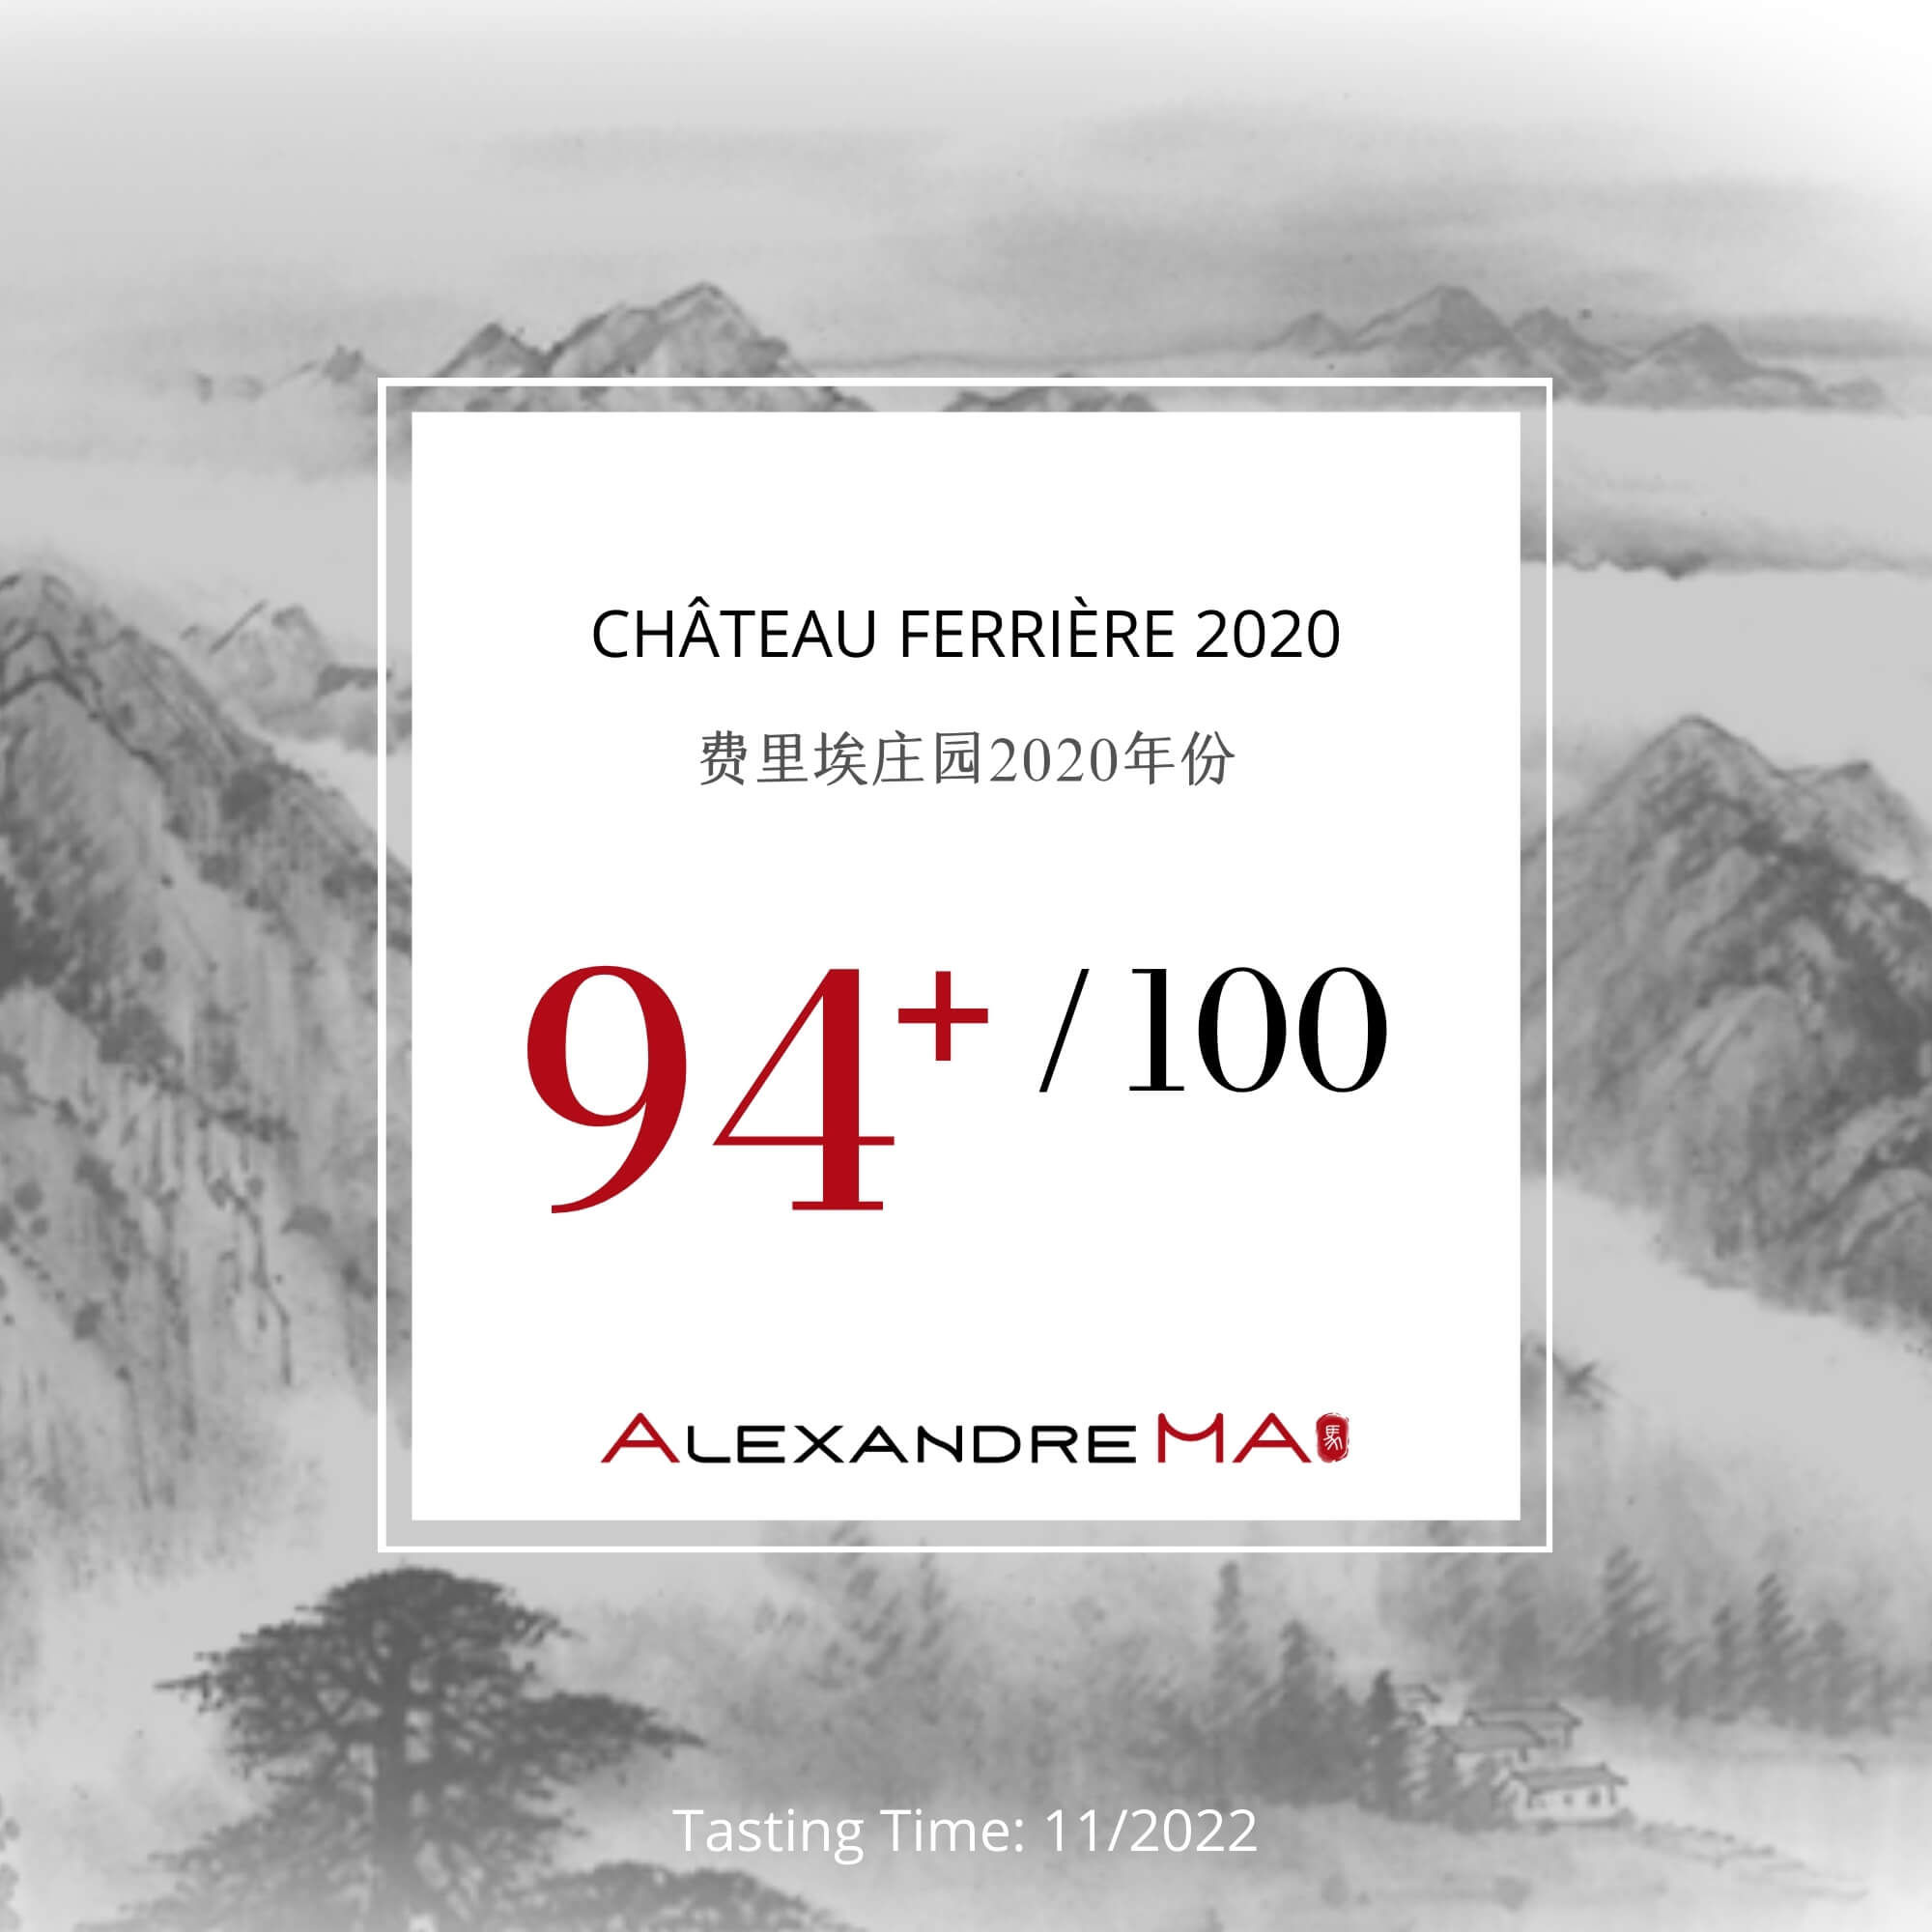 Château Ferrière 2020 - Alexandre MA